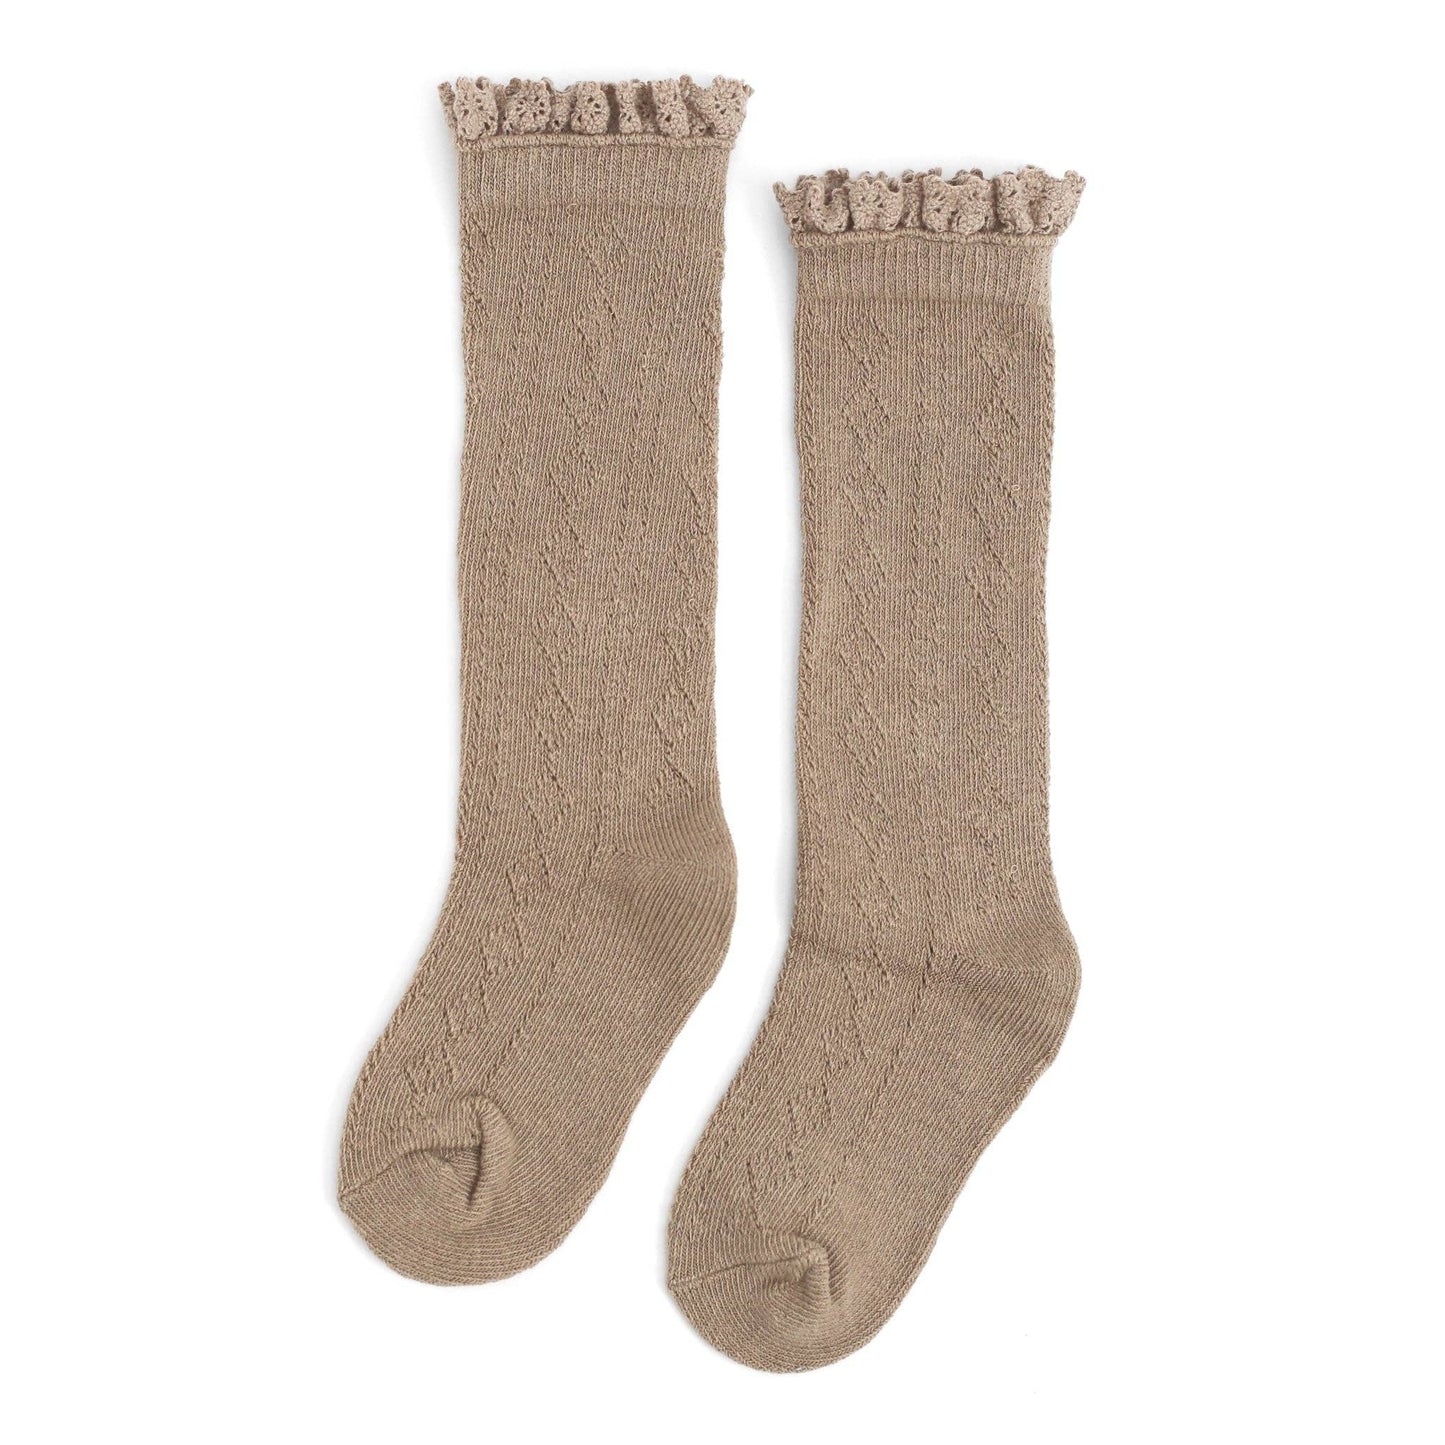 Oat || Fancy Lace Top Knee High Socks 0-6M